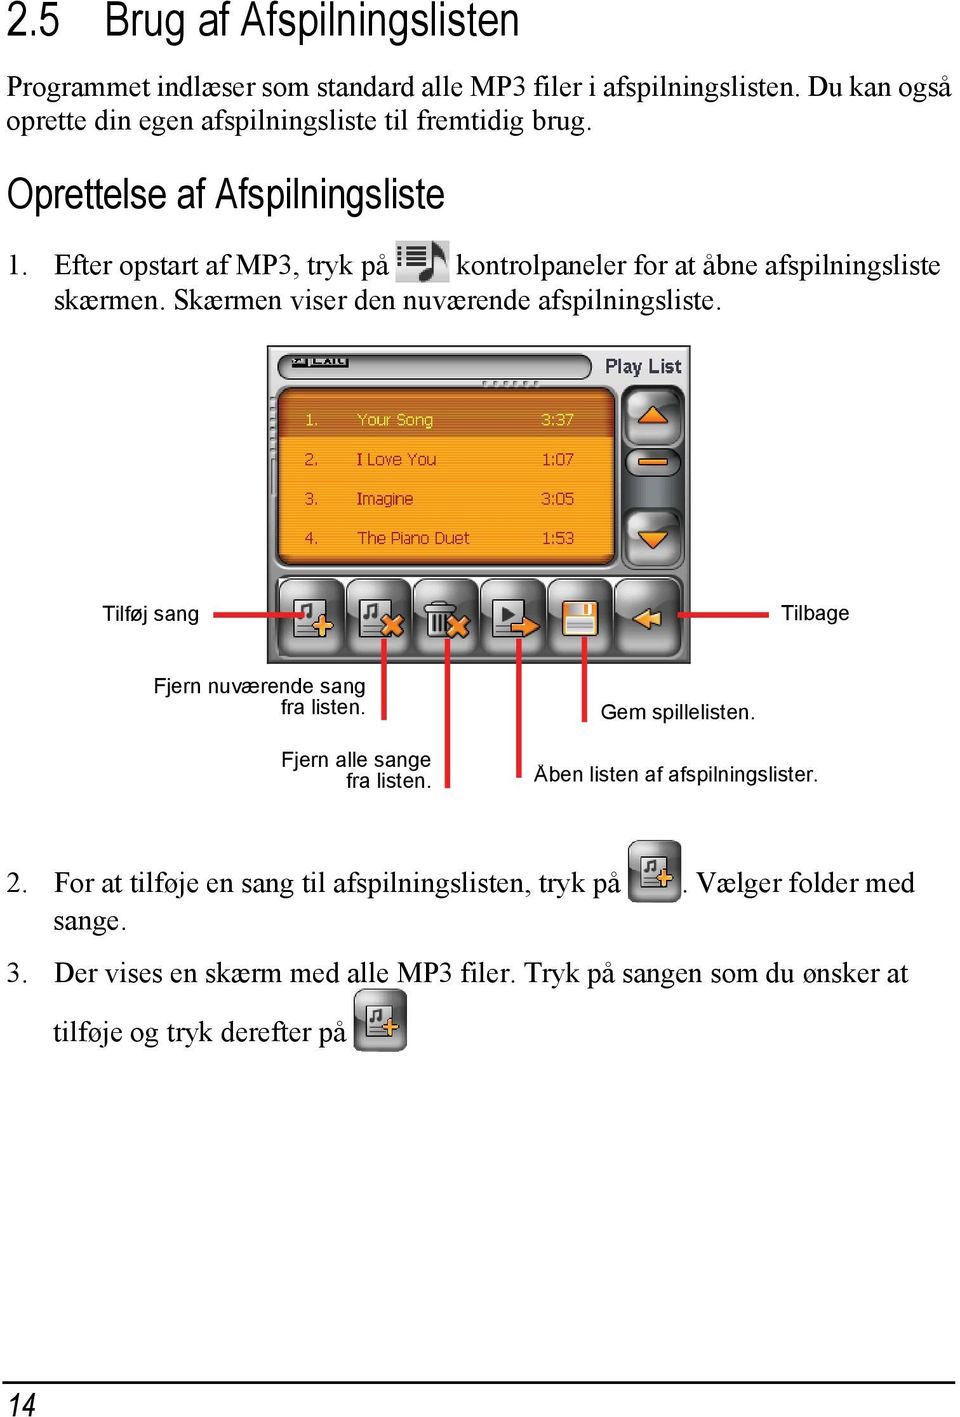 Efter opstart af MP3, tryk på kontrolpaneler for at åbne afspilningsliste skærmen. Skærmen viser den nuværende afspilningsliste.